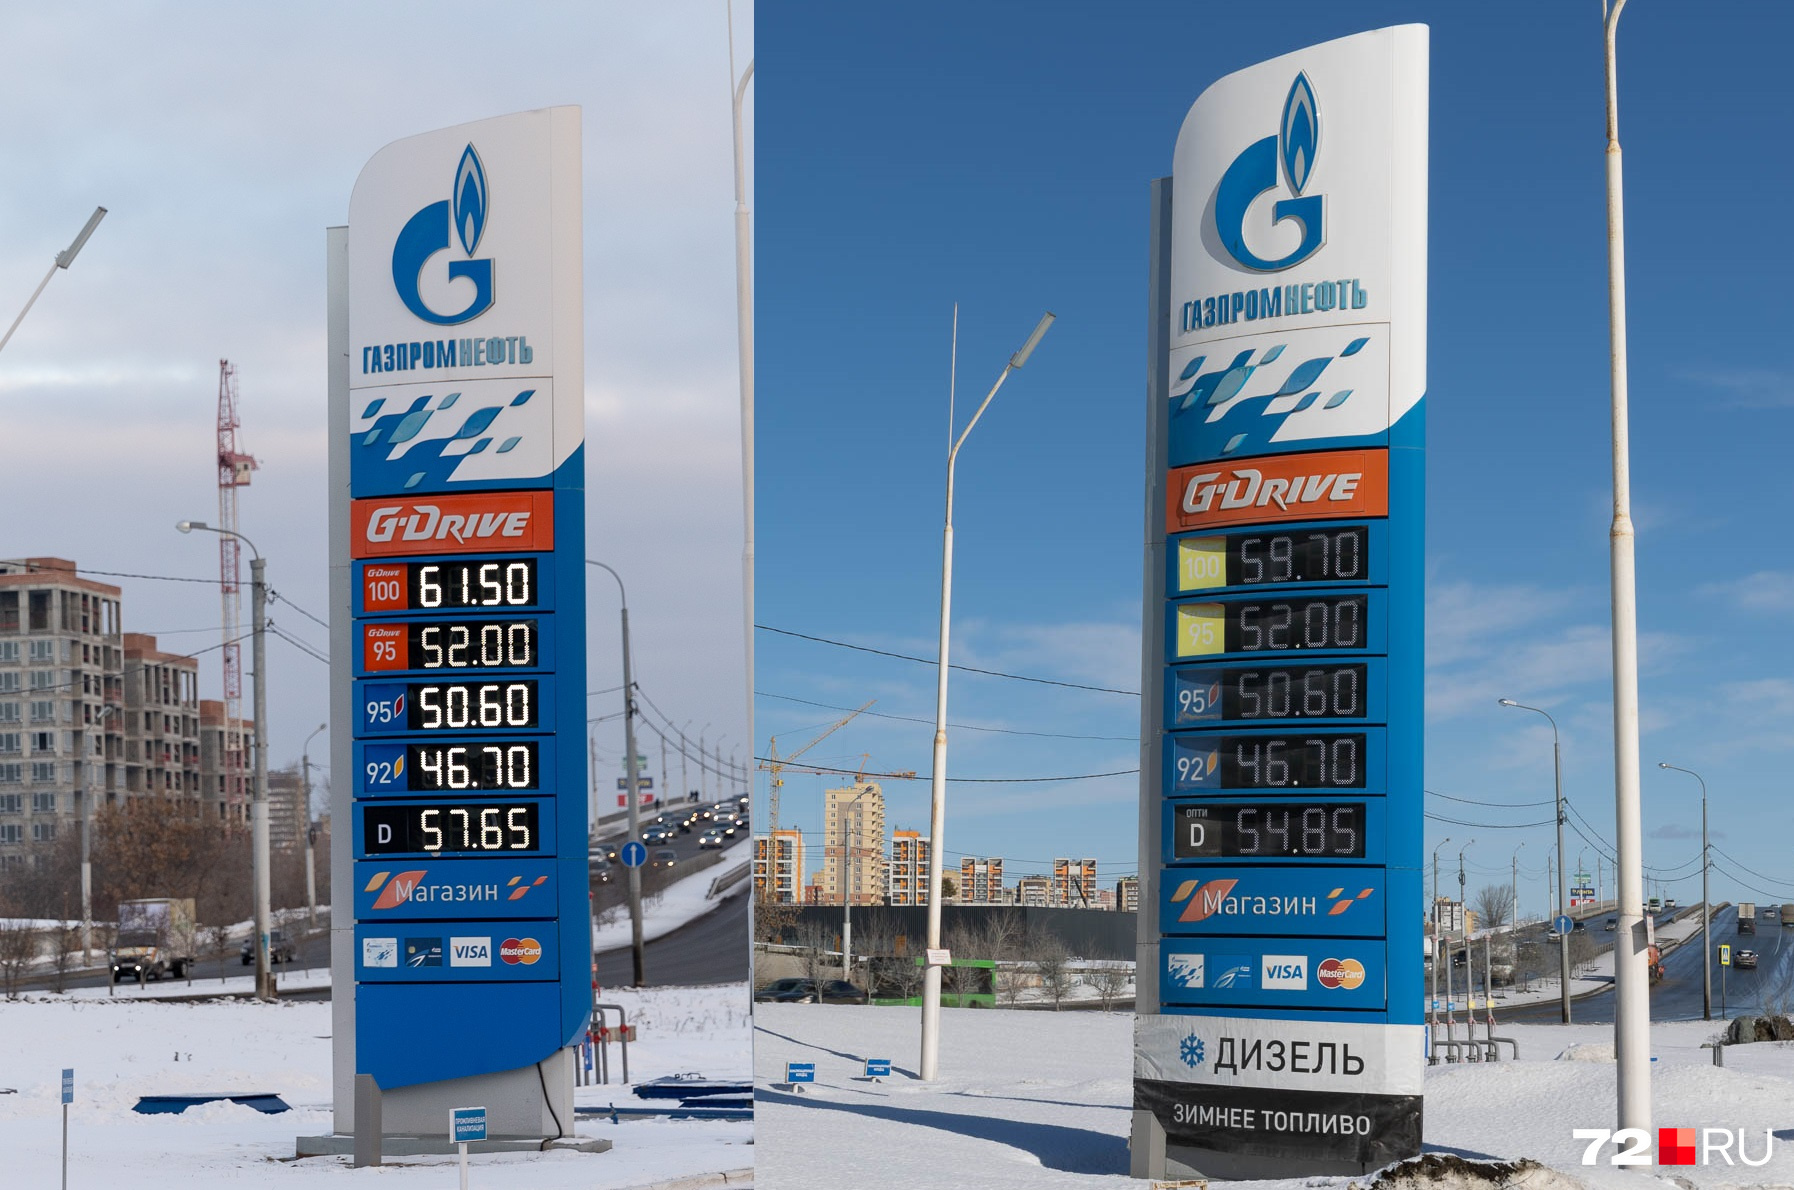 Заправка «Газпромнефти» долгое время оставалась островом стабильности — там ценники не менялись долгое время. Но всё же за 9 месяцев и тут стоимость топлива незначительно повысилась — причем на их собственную марку. А вот дизель стал дороже — почти на три рубля. Слева — актуальная цена, справа — мартовская